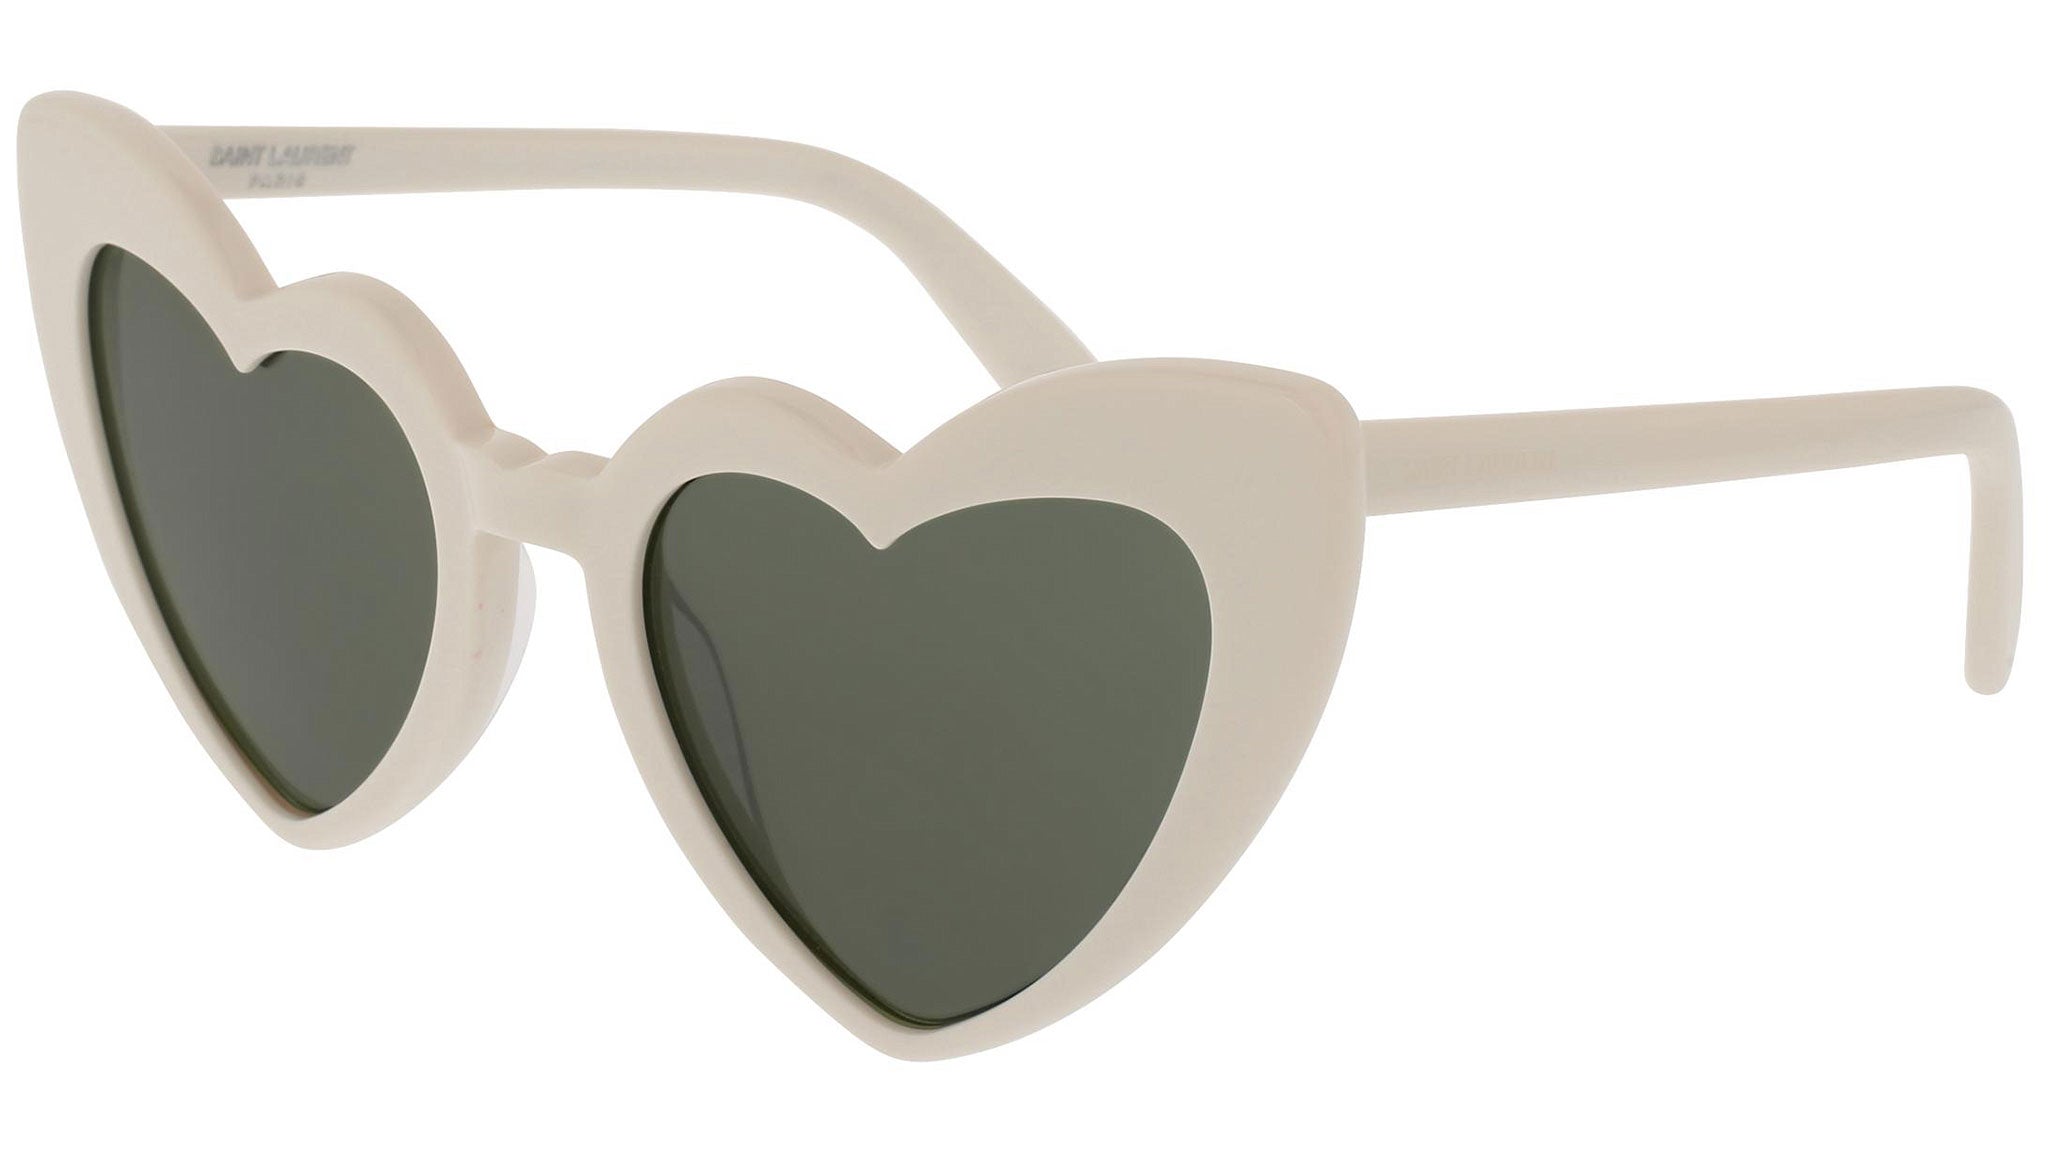 Saint Laurent Cat Eye Sunglasses, 54mm - Ivory